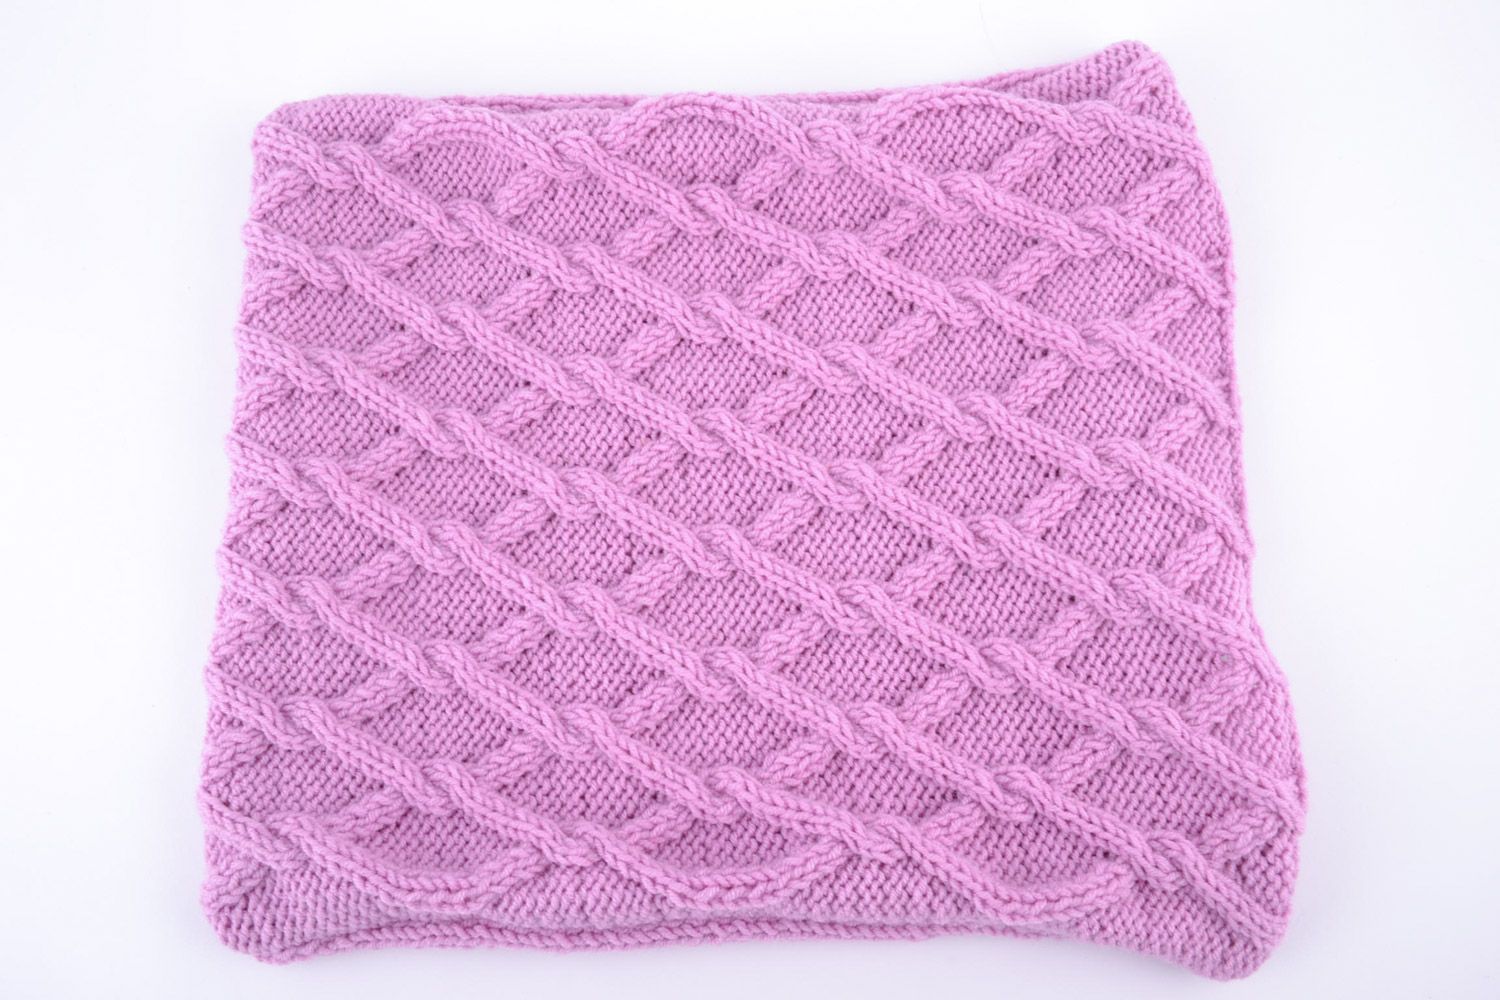 Housse de coussin tricotée de fils en mi-laine violette originale faite main photo 3